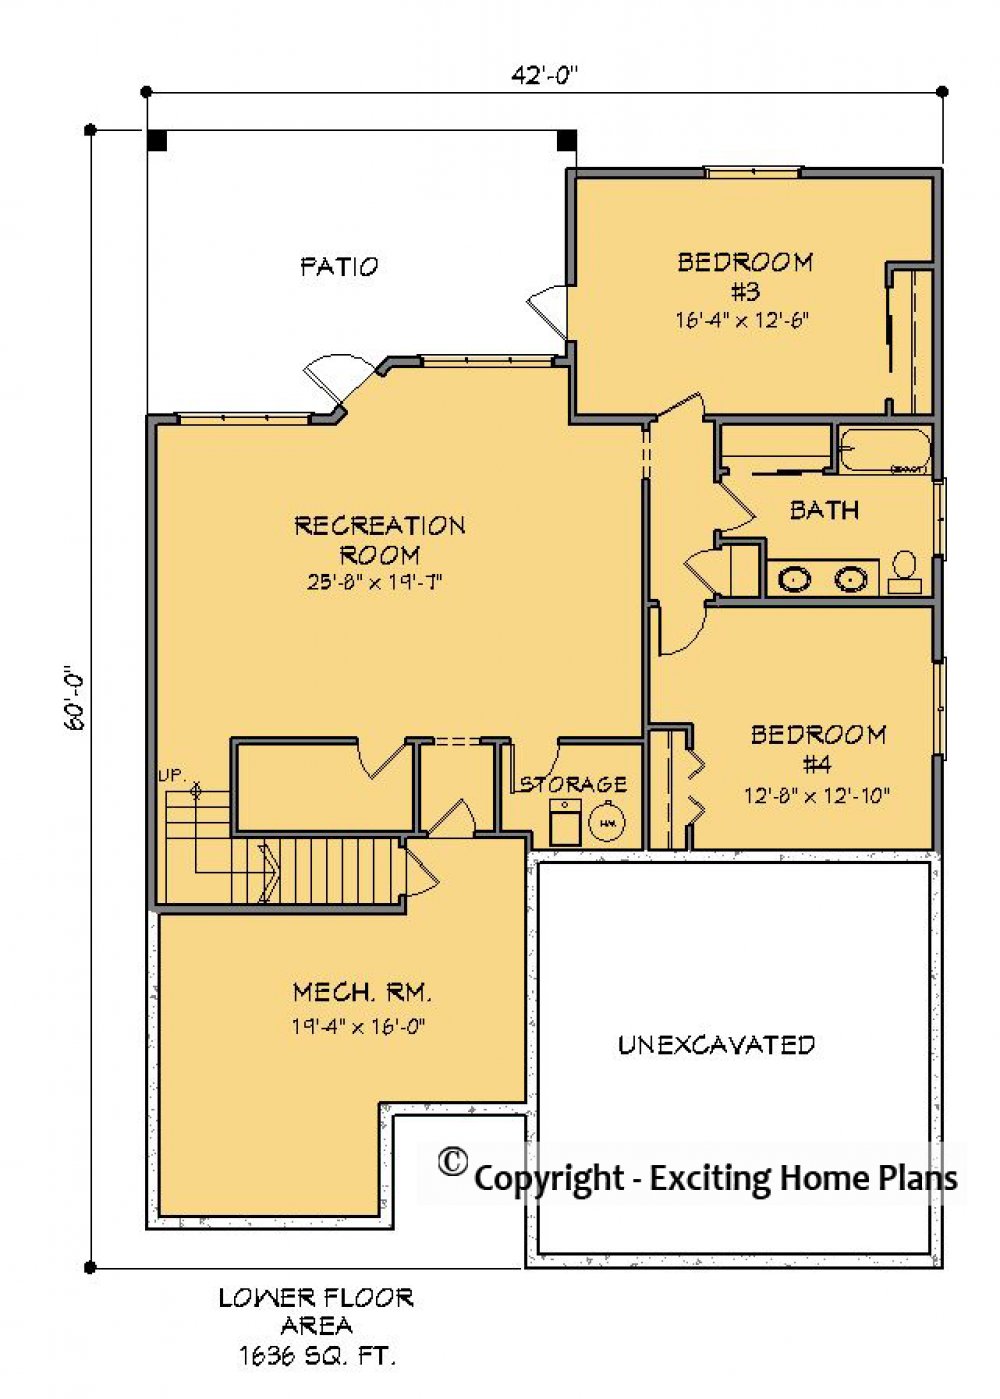 House Plan E1581-10  Lower Floor Plan